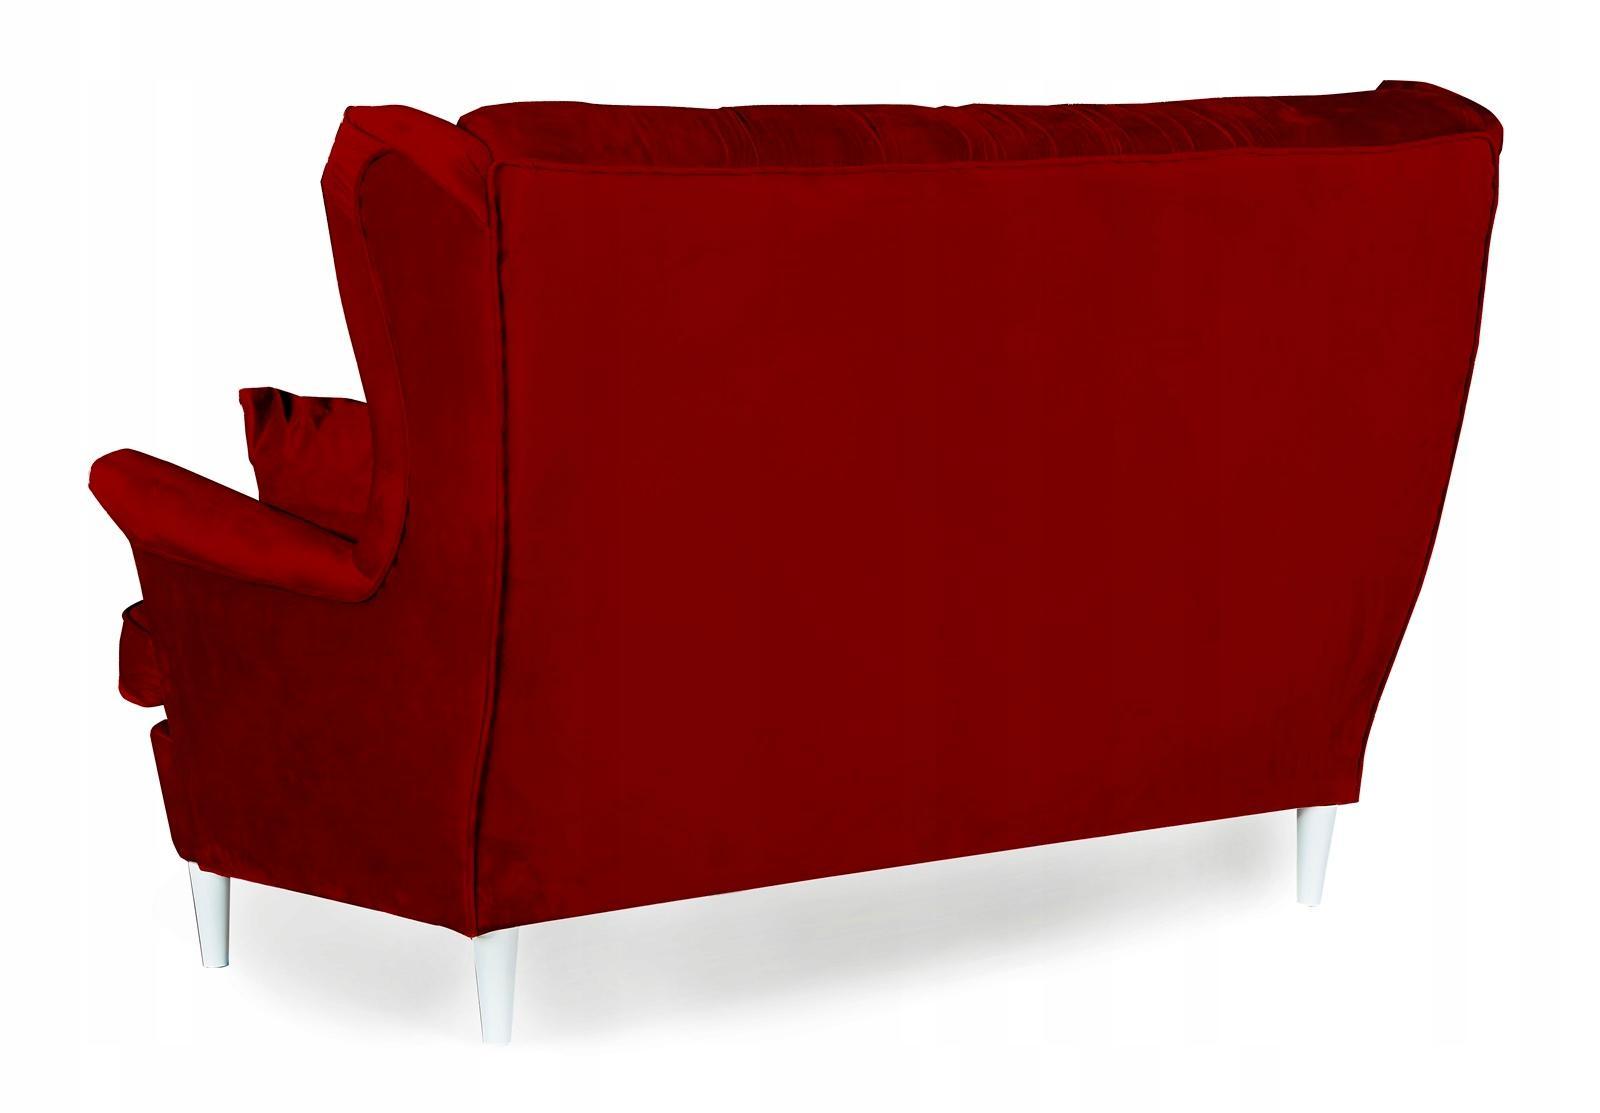 Zestaw wypoczynkowy sofa + 2 fotele Family Meble 2 Full Screen